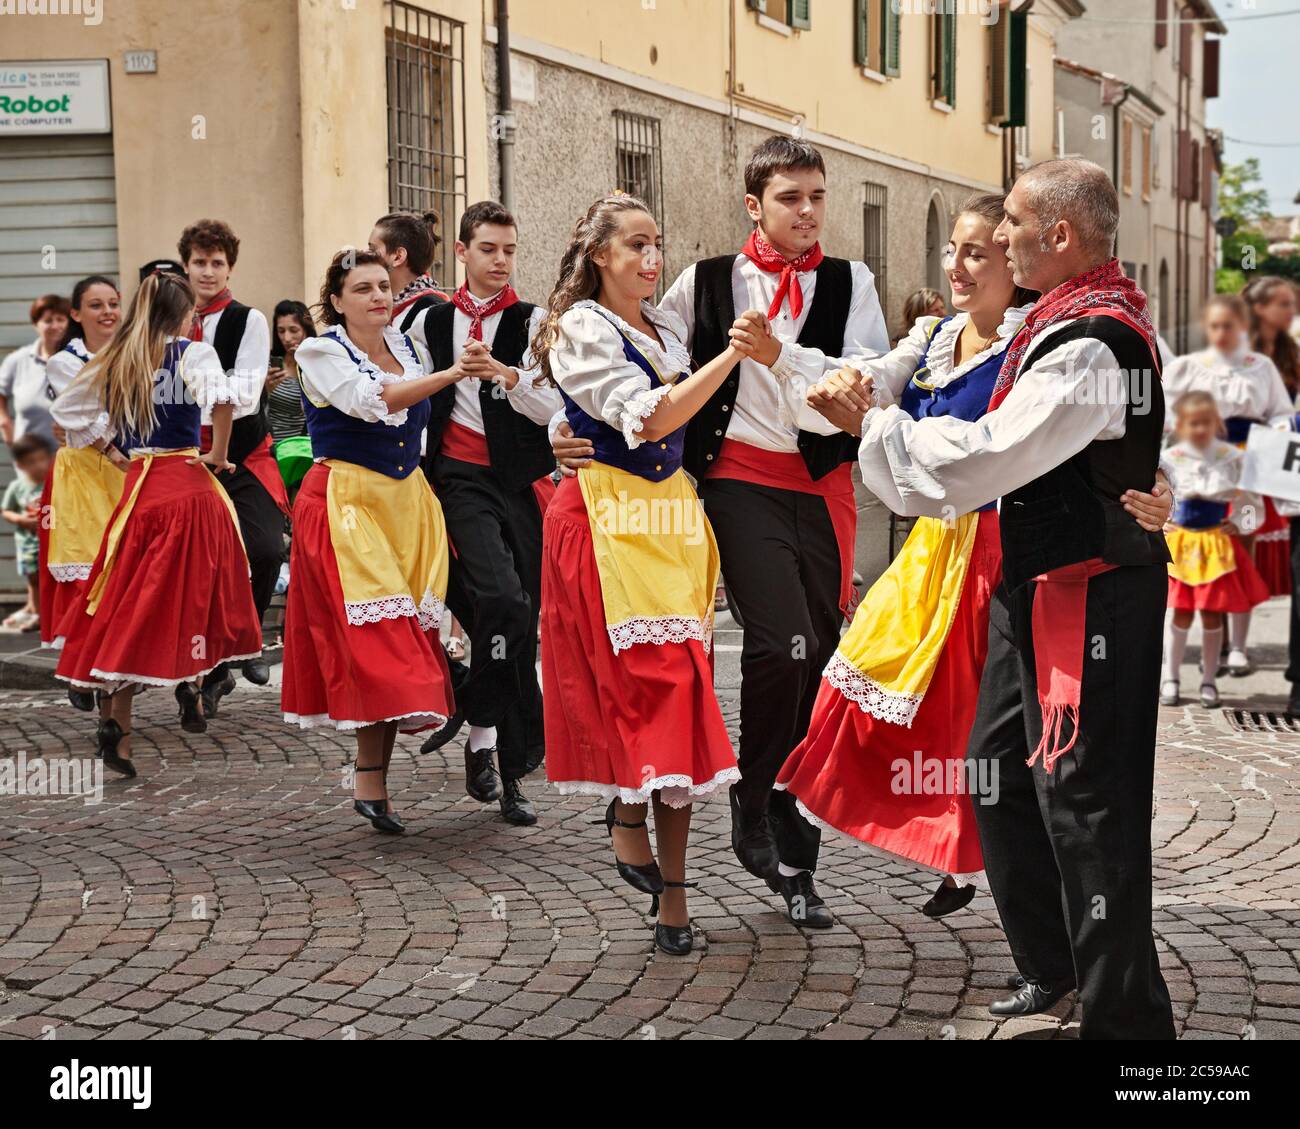 Gruppo Folklore Folklore Canterini Romagnoli esegue la danza tradizionale durante il Festival Internazionale del Folklore di Russi, RA, Italia Foto Stock